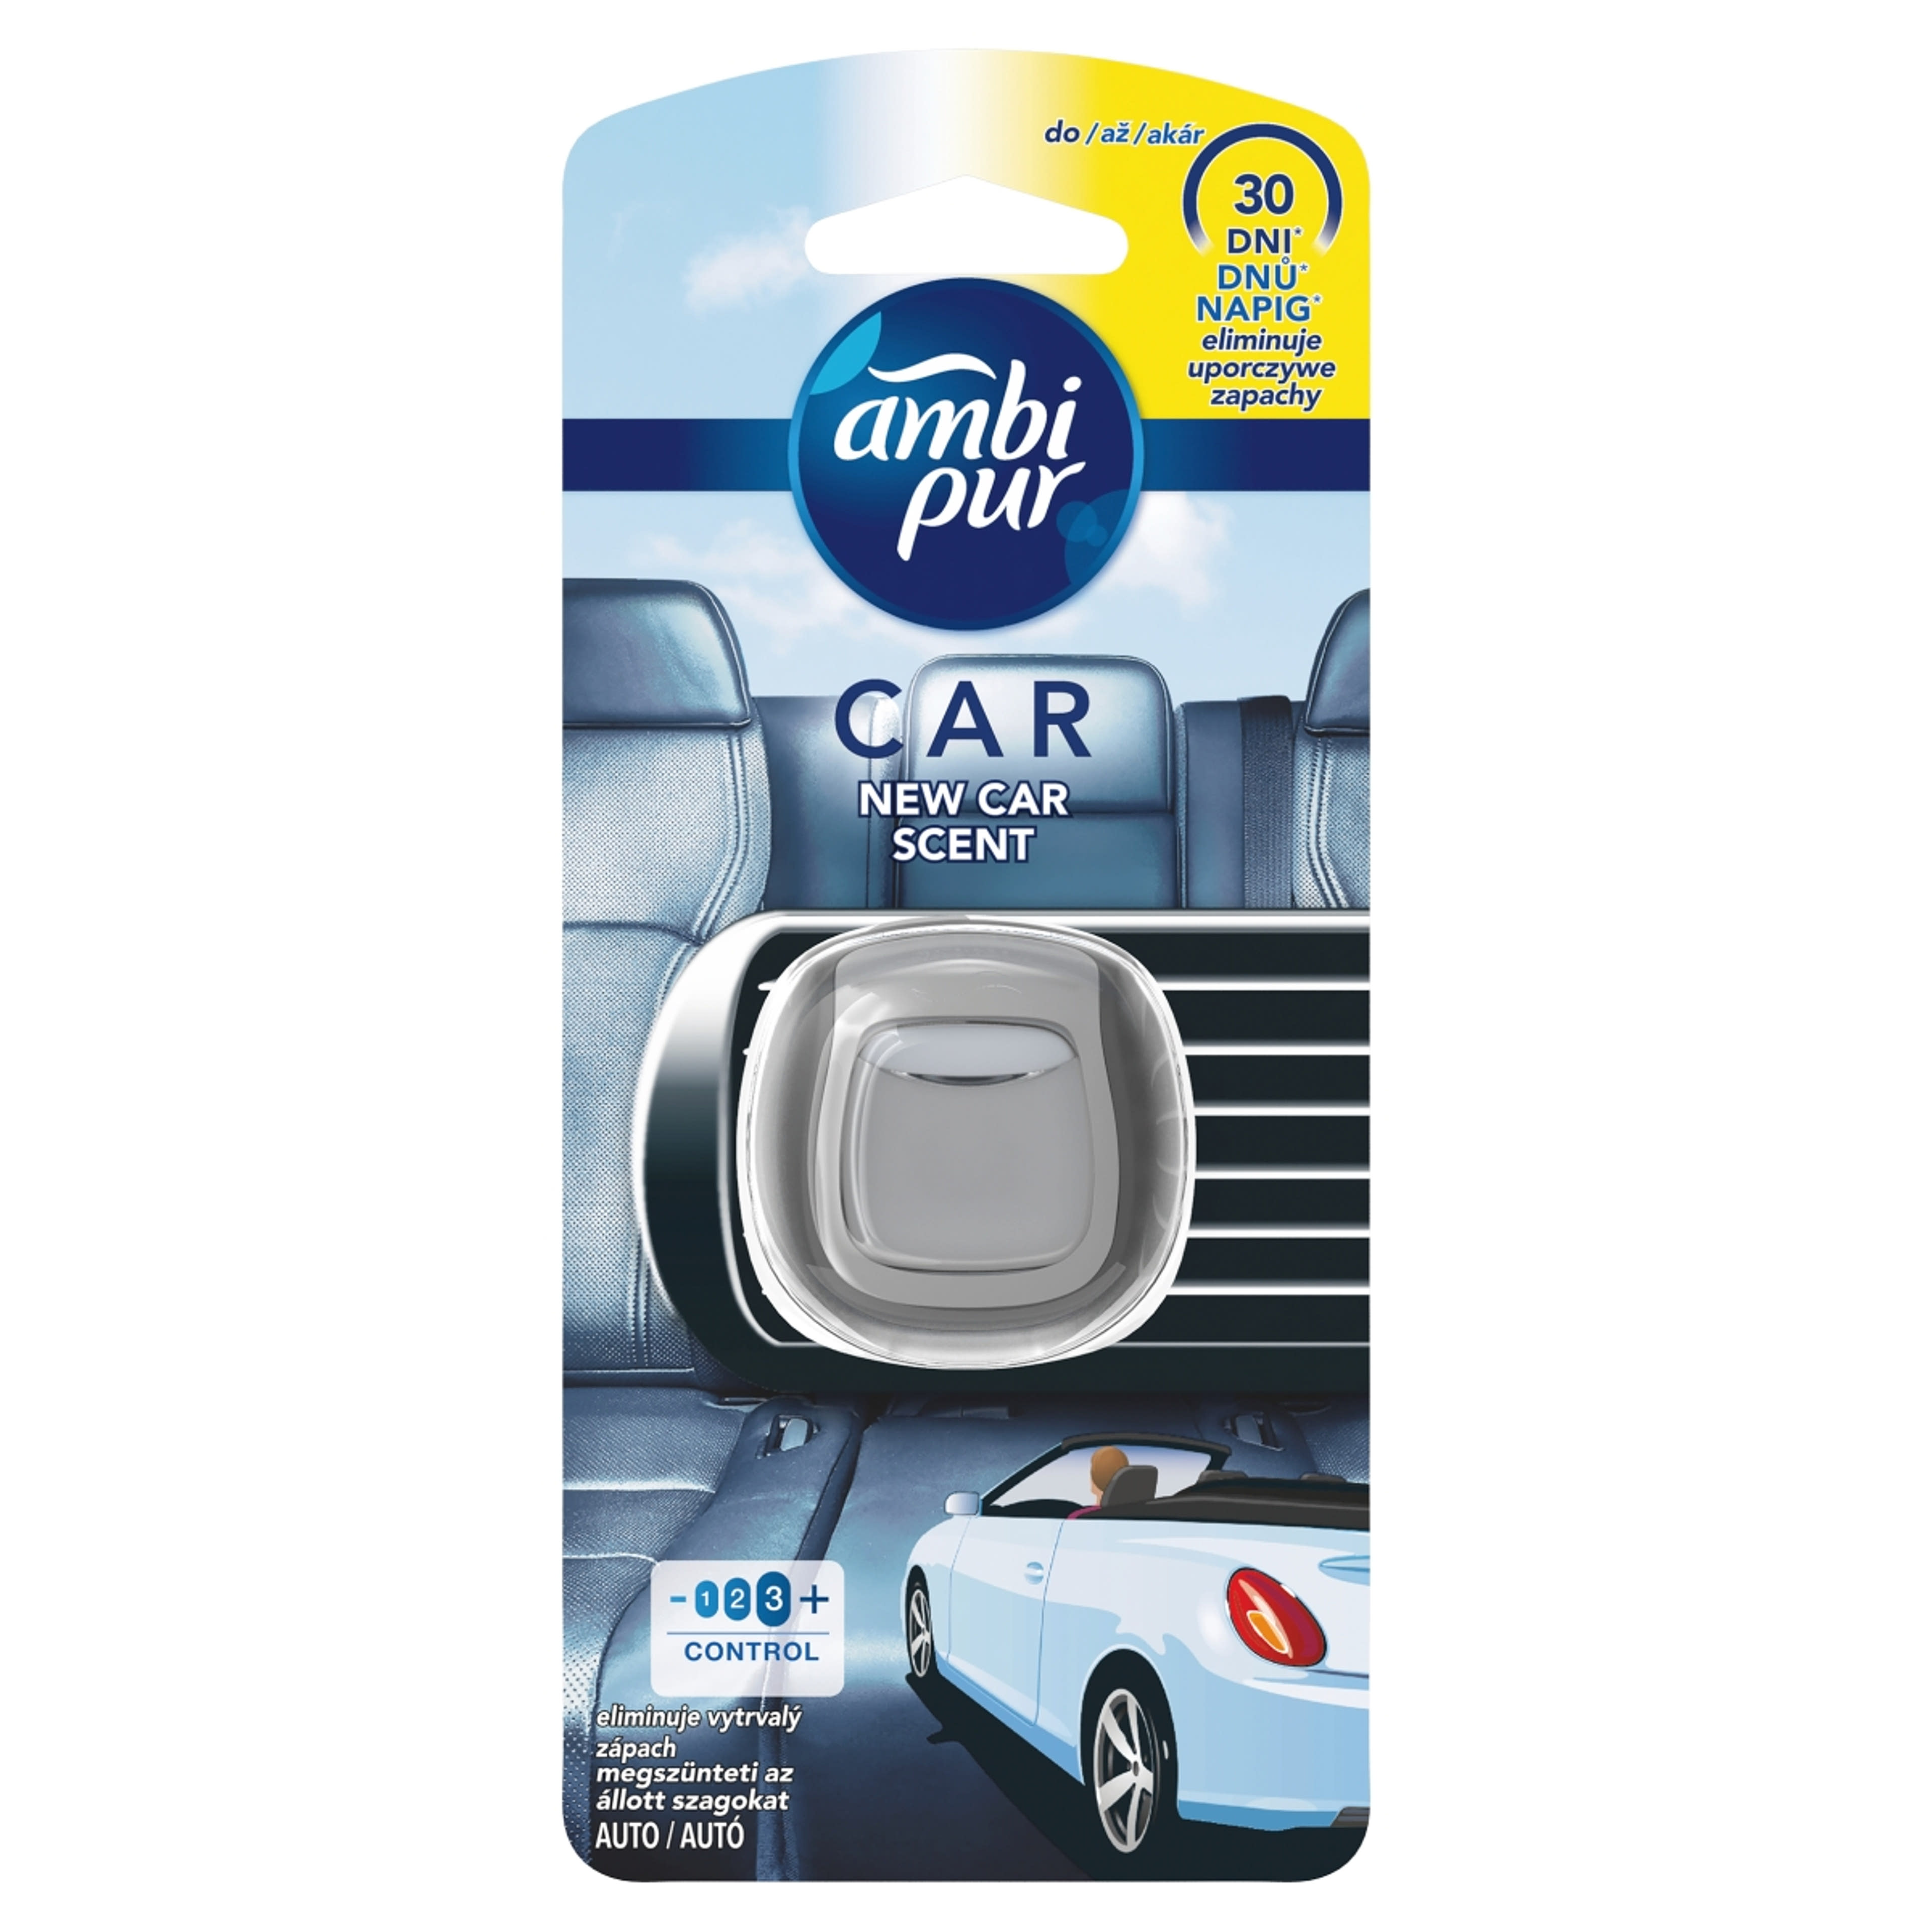 Ambi Pur autoillatosító new car scent - 2 ml-1